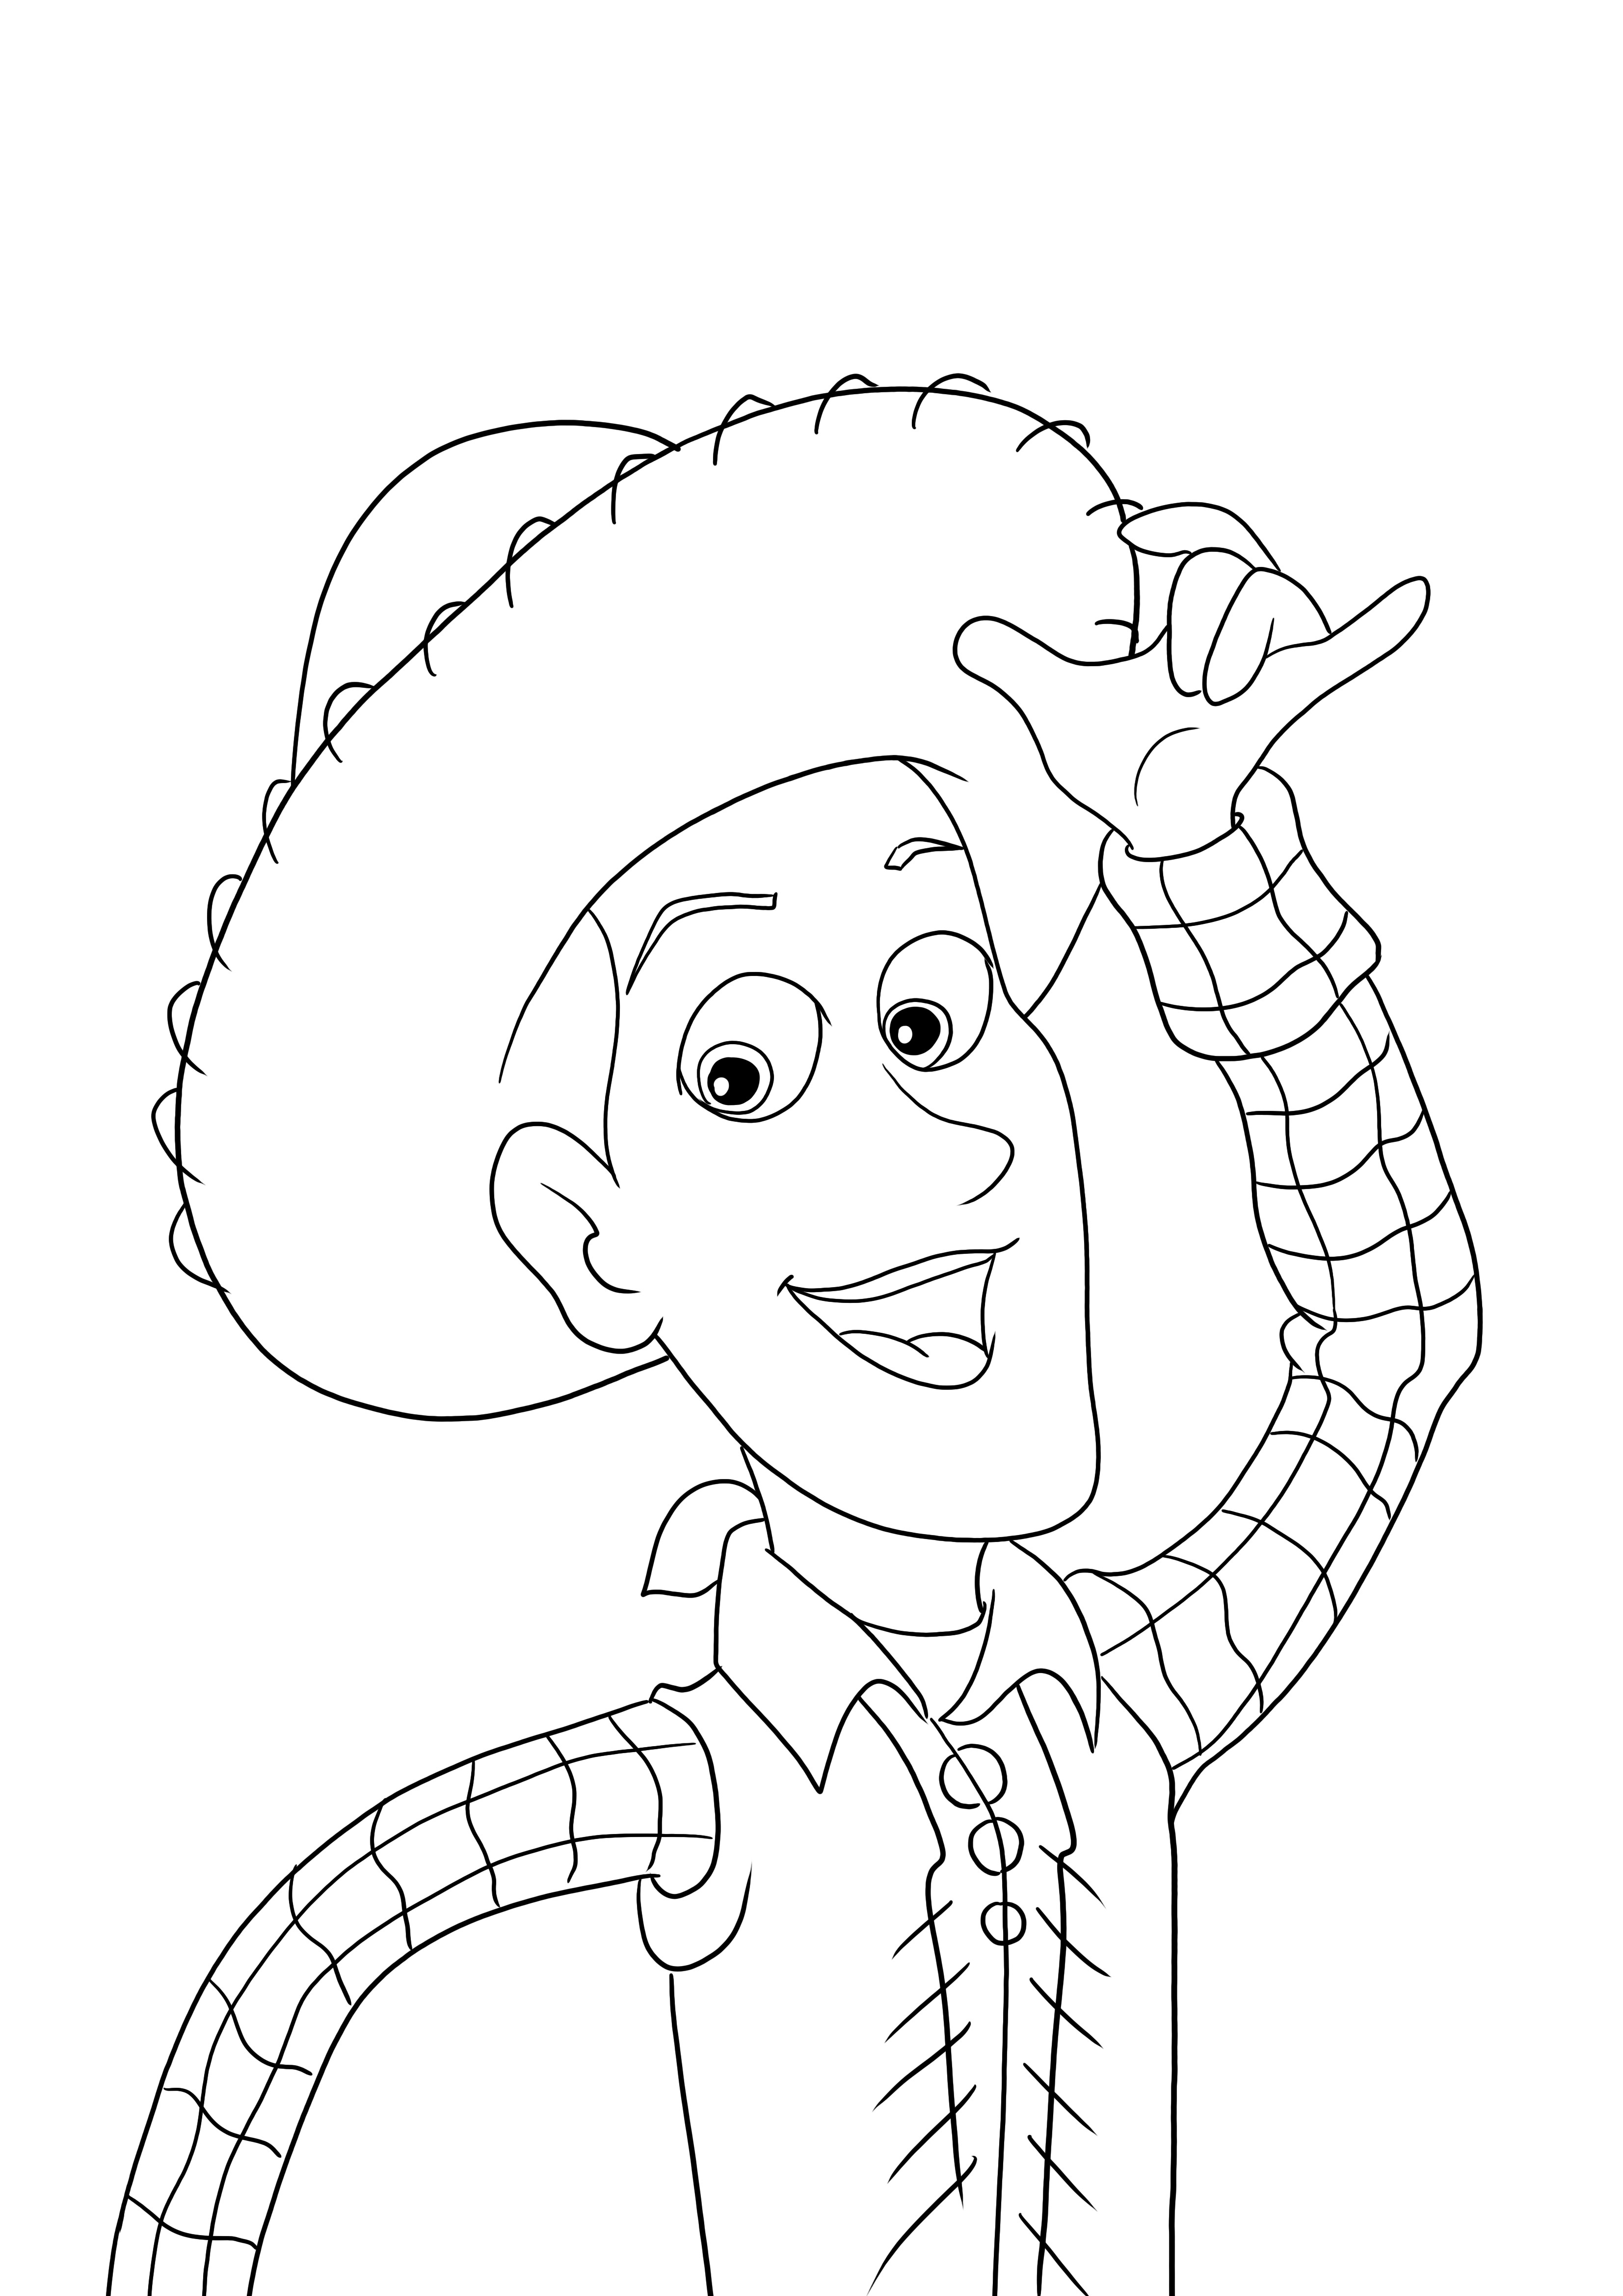 Personaggio Woody del film Toy Story da scaricare o stampare gratuitamente e colorare